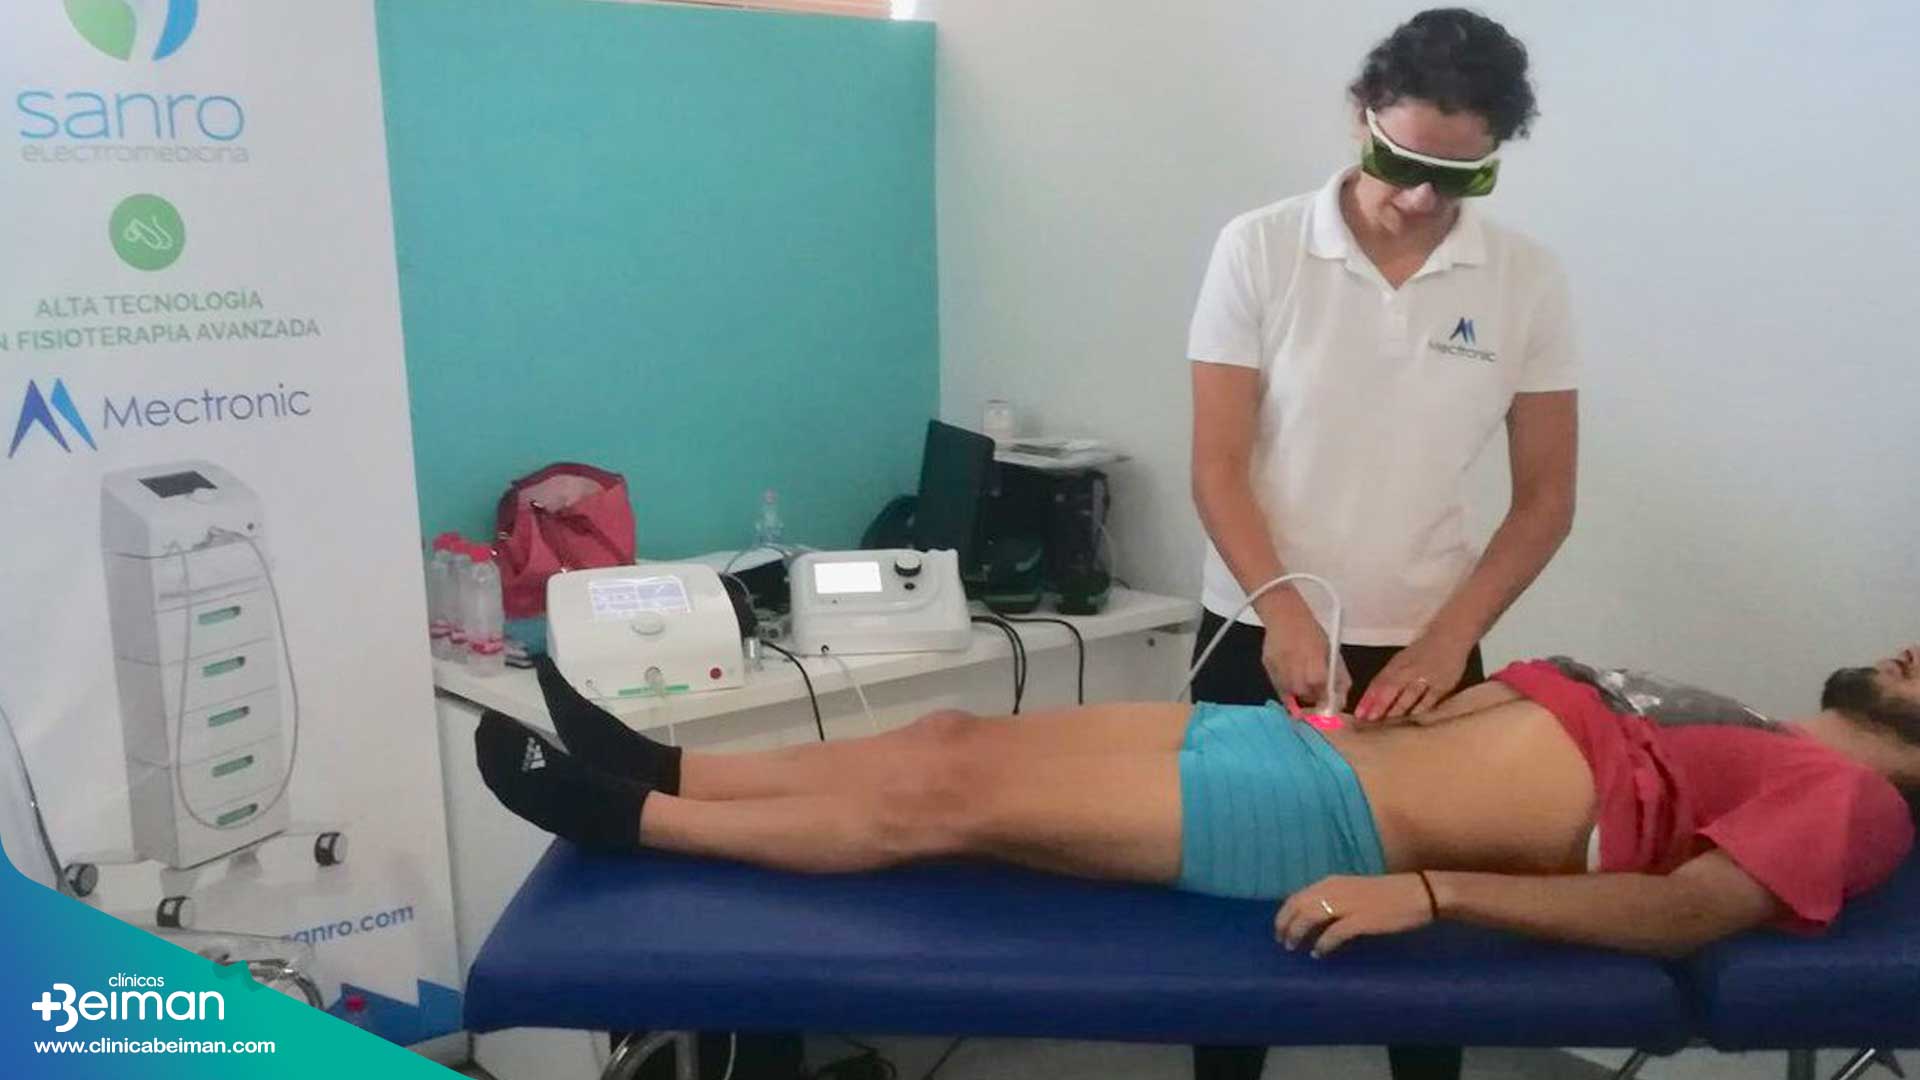 Laserterapia en Andalucía con Sanro y Clínicas Beiman